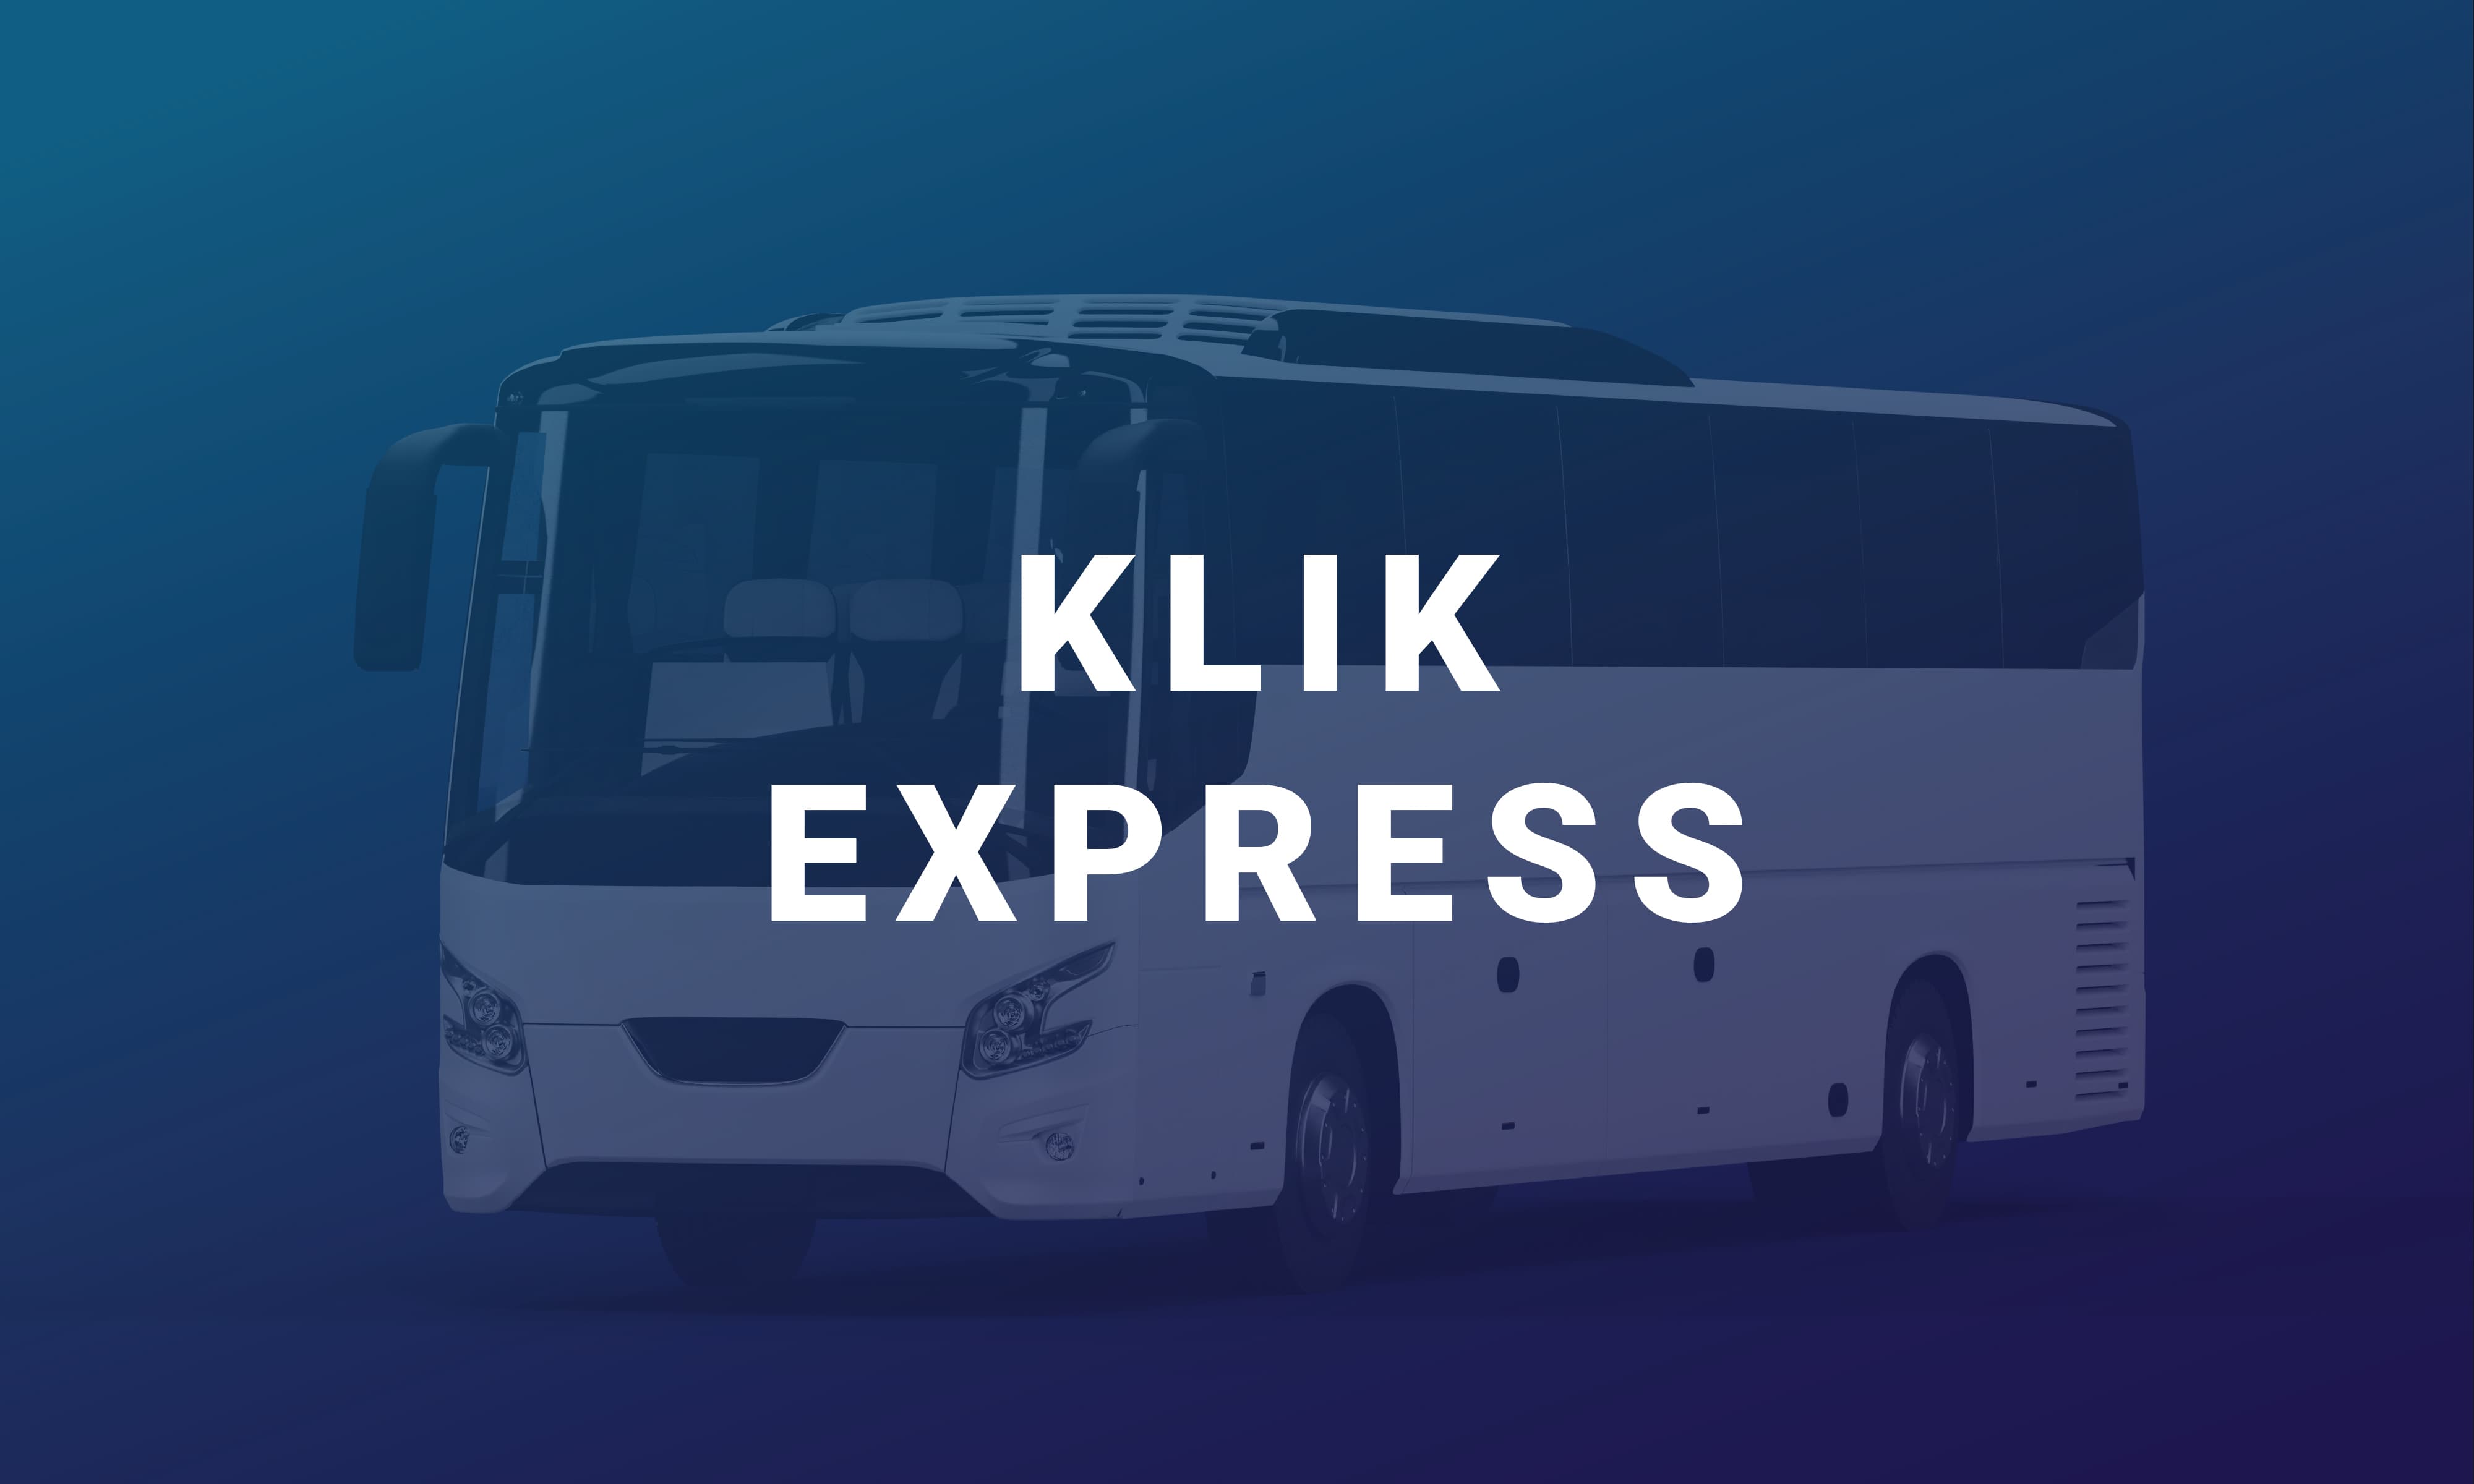 Klik Expres është një linjë ndërqytetase me qendër në Tiranë që ofron një shërbim çdo ditë për në Fier dhe kthim.